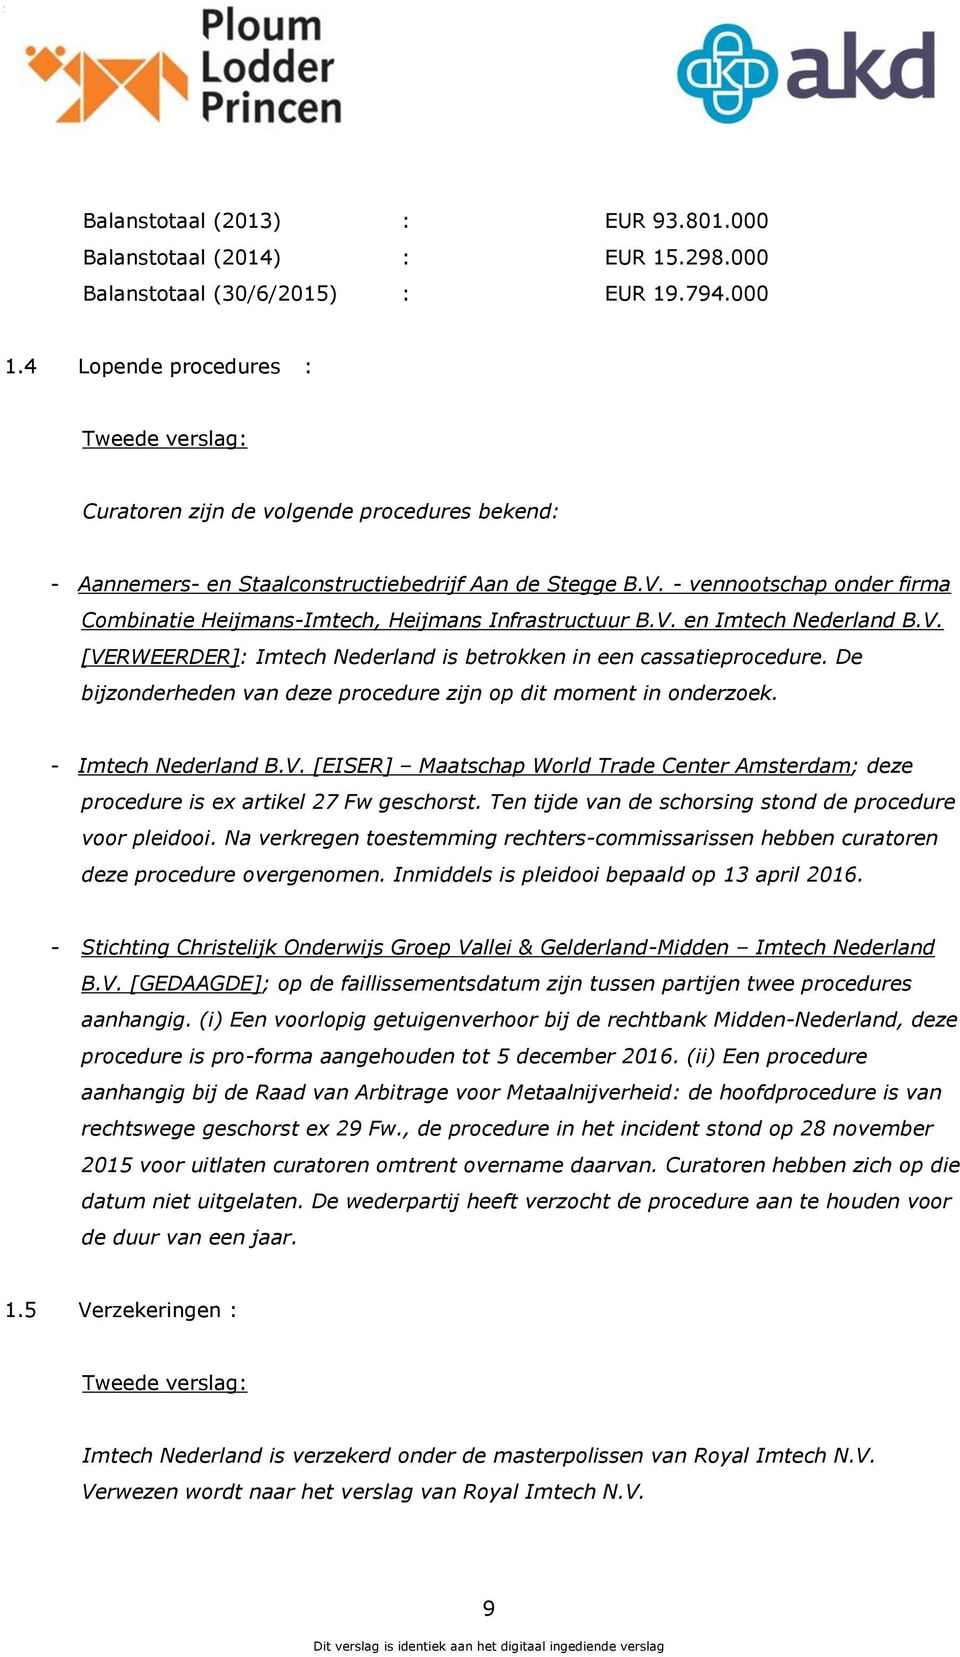 - vennootschap onder firma Combinatie Heijmans-Imtech, Heijmans Infrastructuur B.V. en [VERWEERDER]: Imtech Nederland is betrokken in een cassatieprocedure.